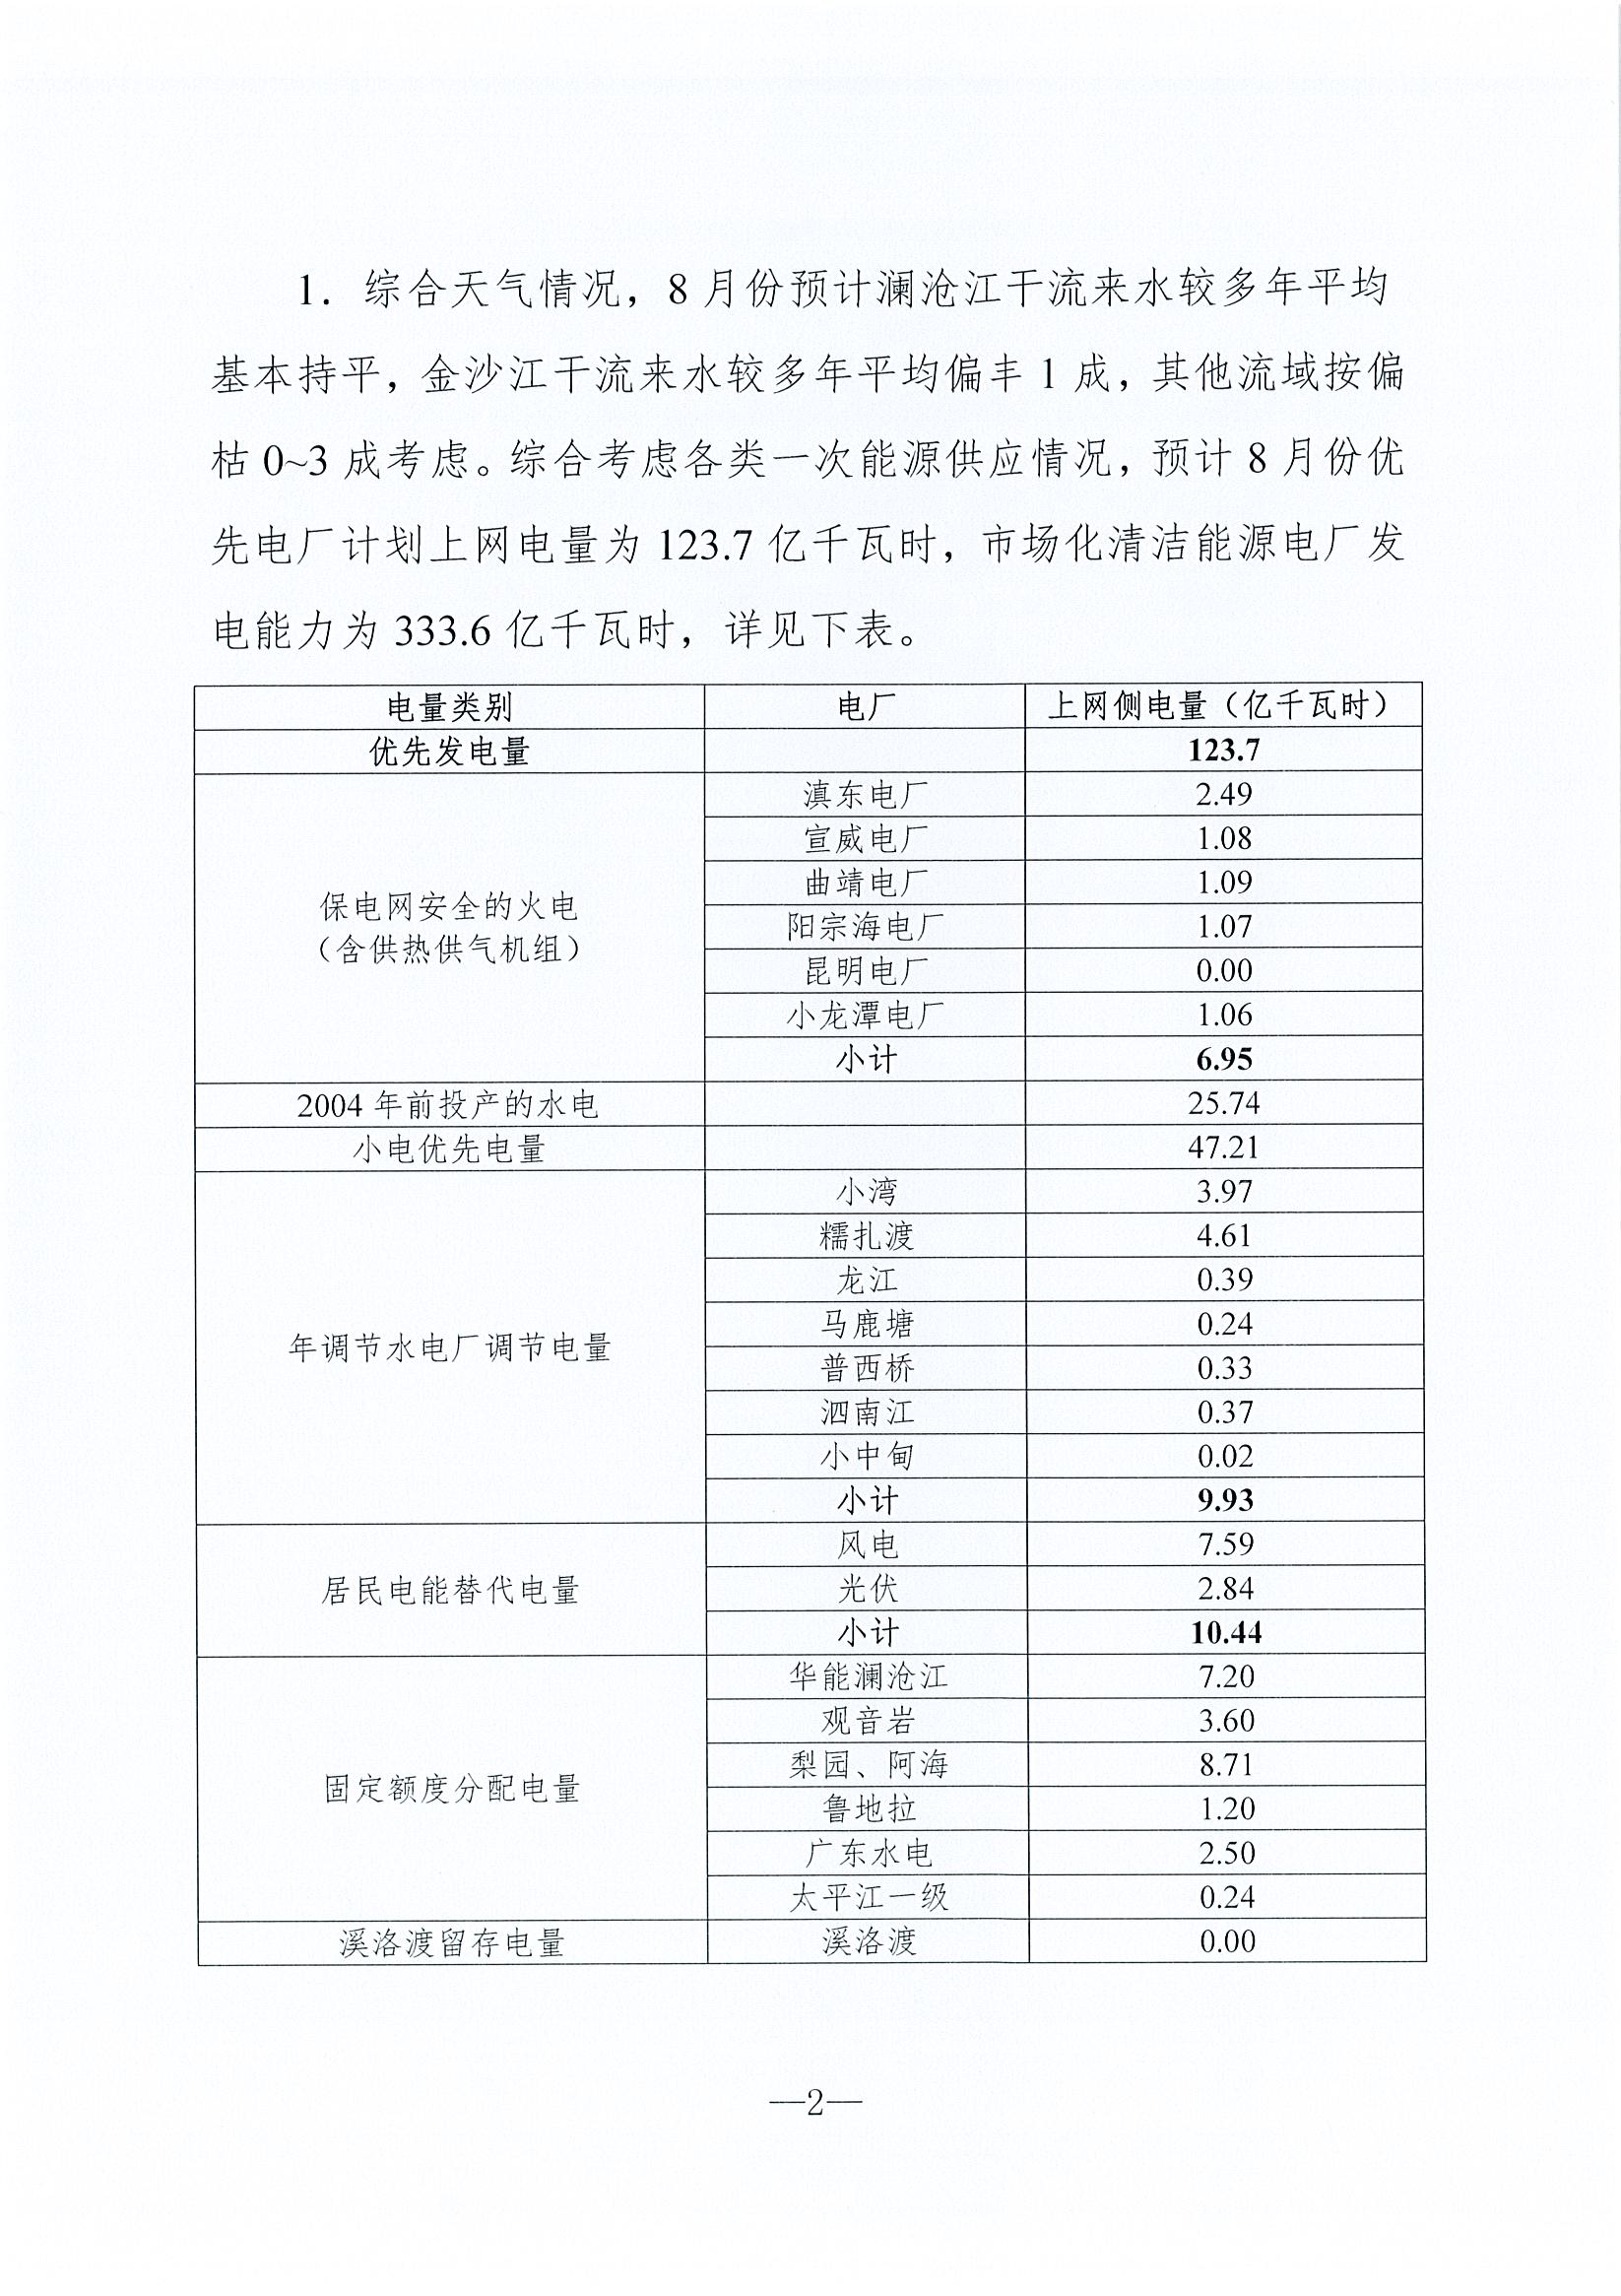 2019年8月云南电力市场化交易信息披露